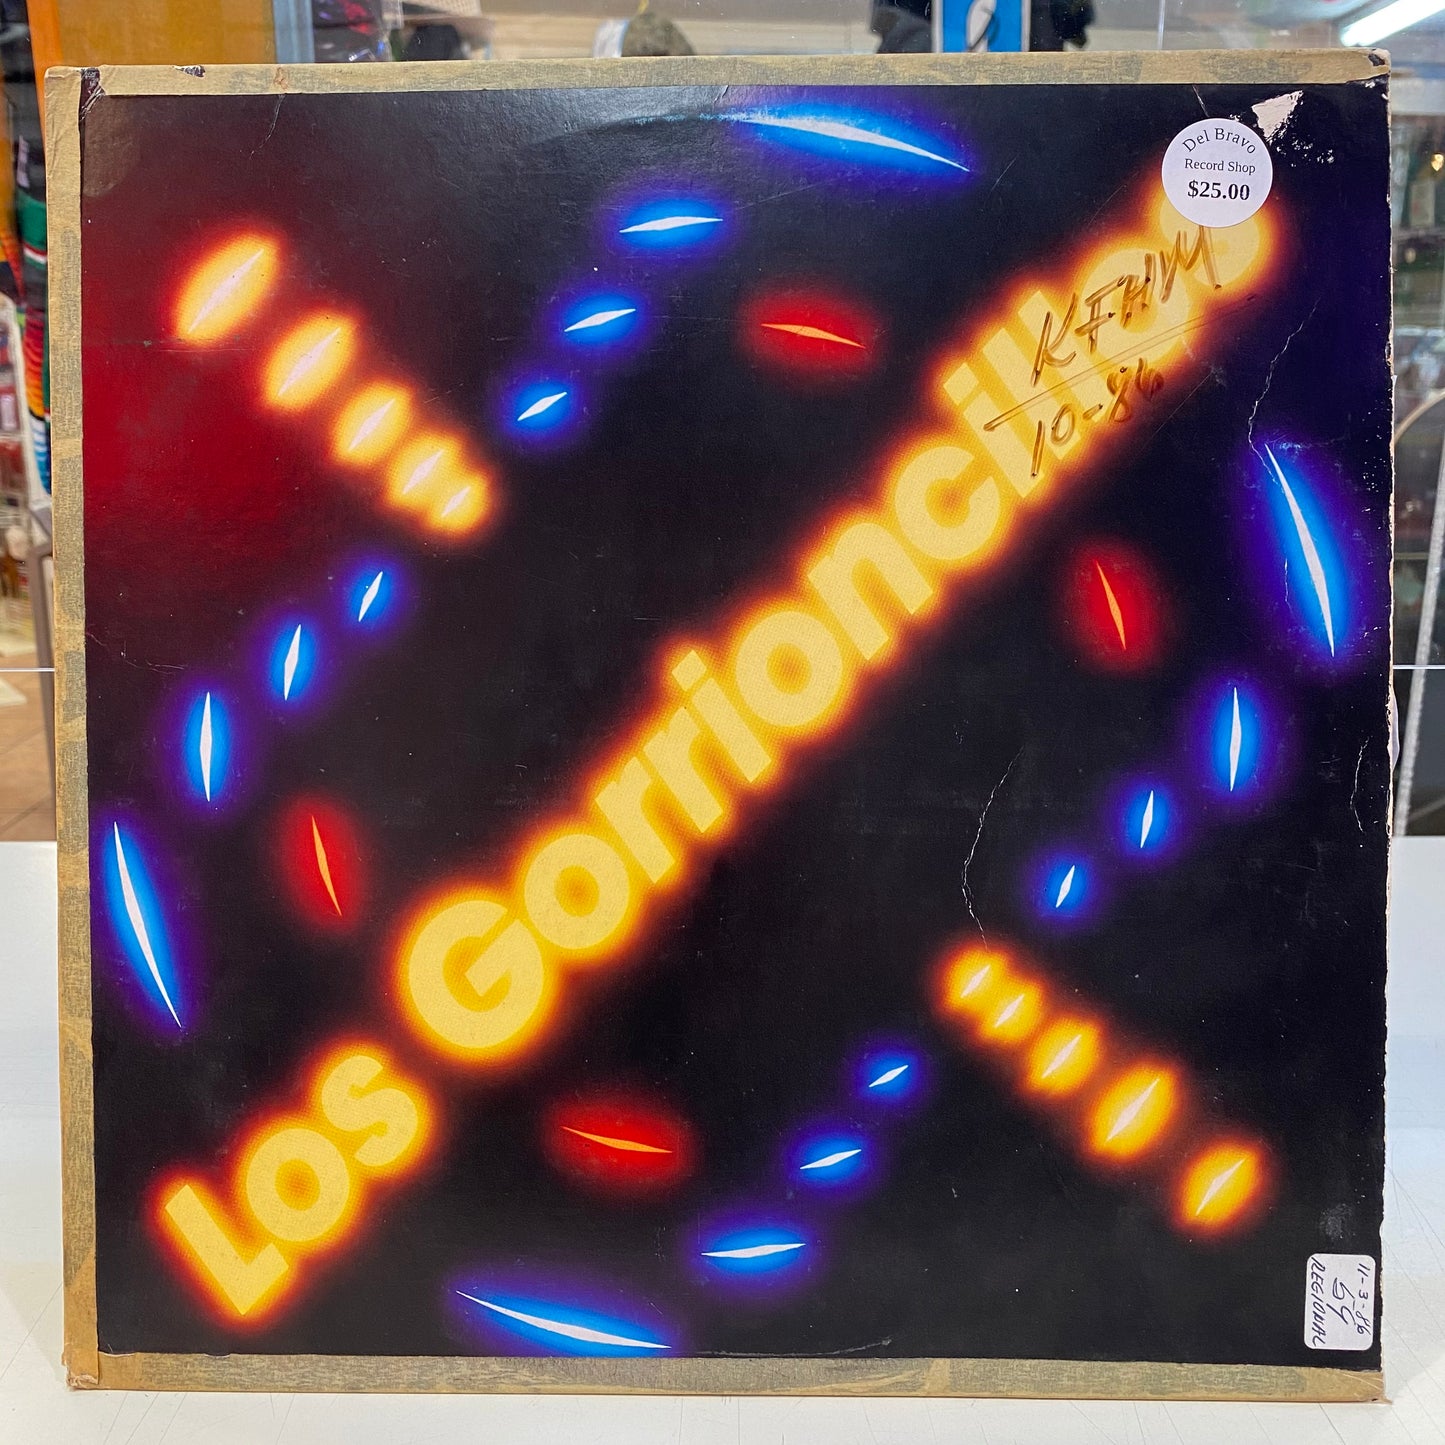 Los Gorrioncillos (Vinyl)